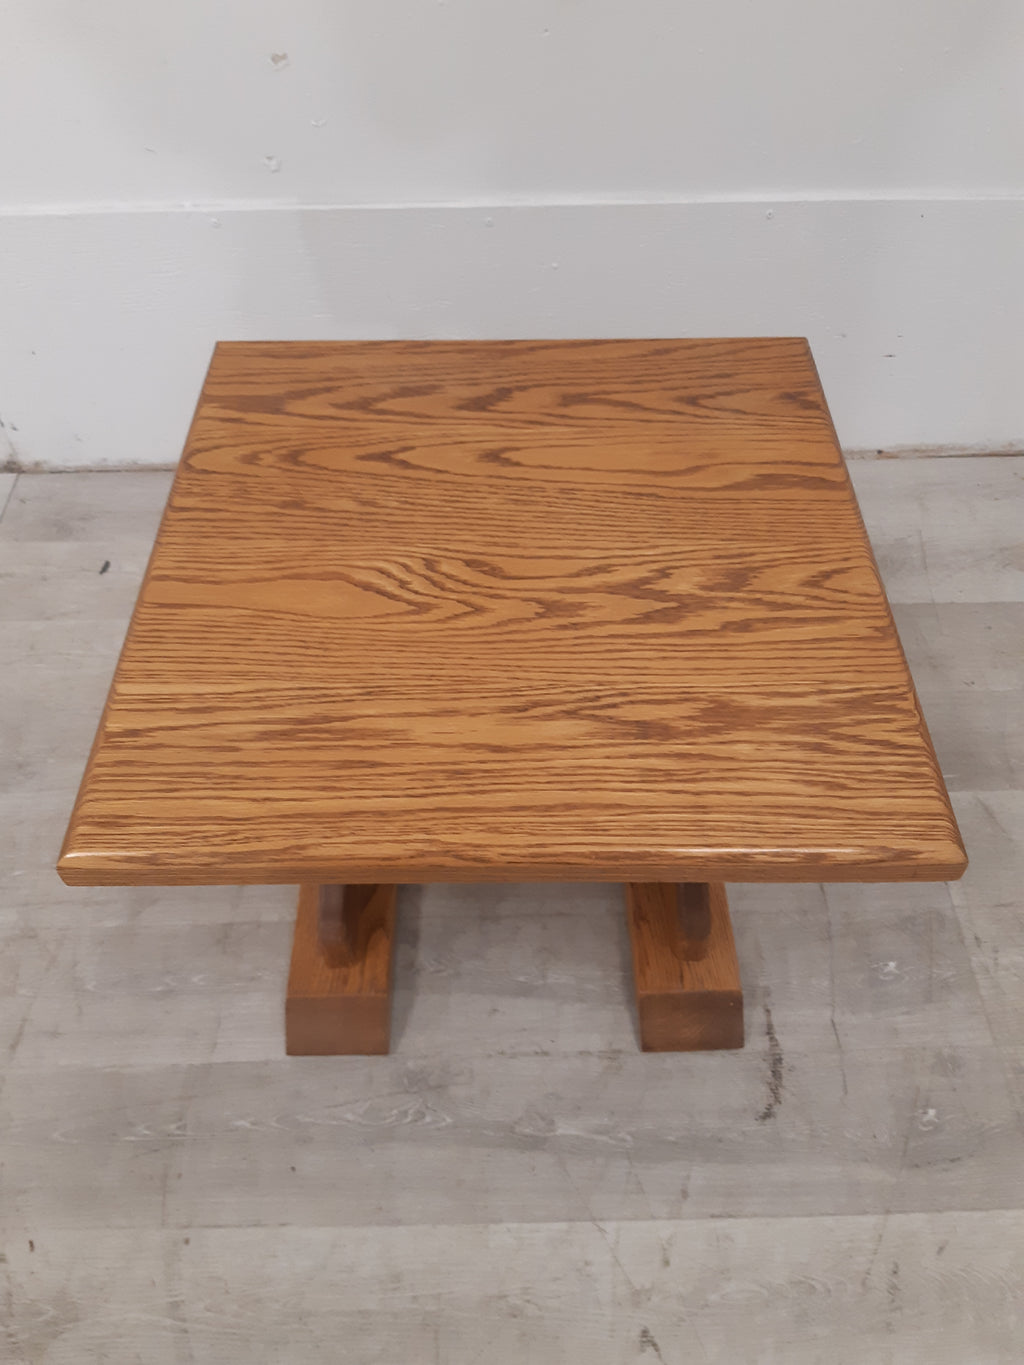 22" Solid Oak Side Table